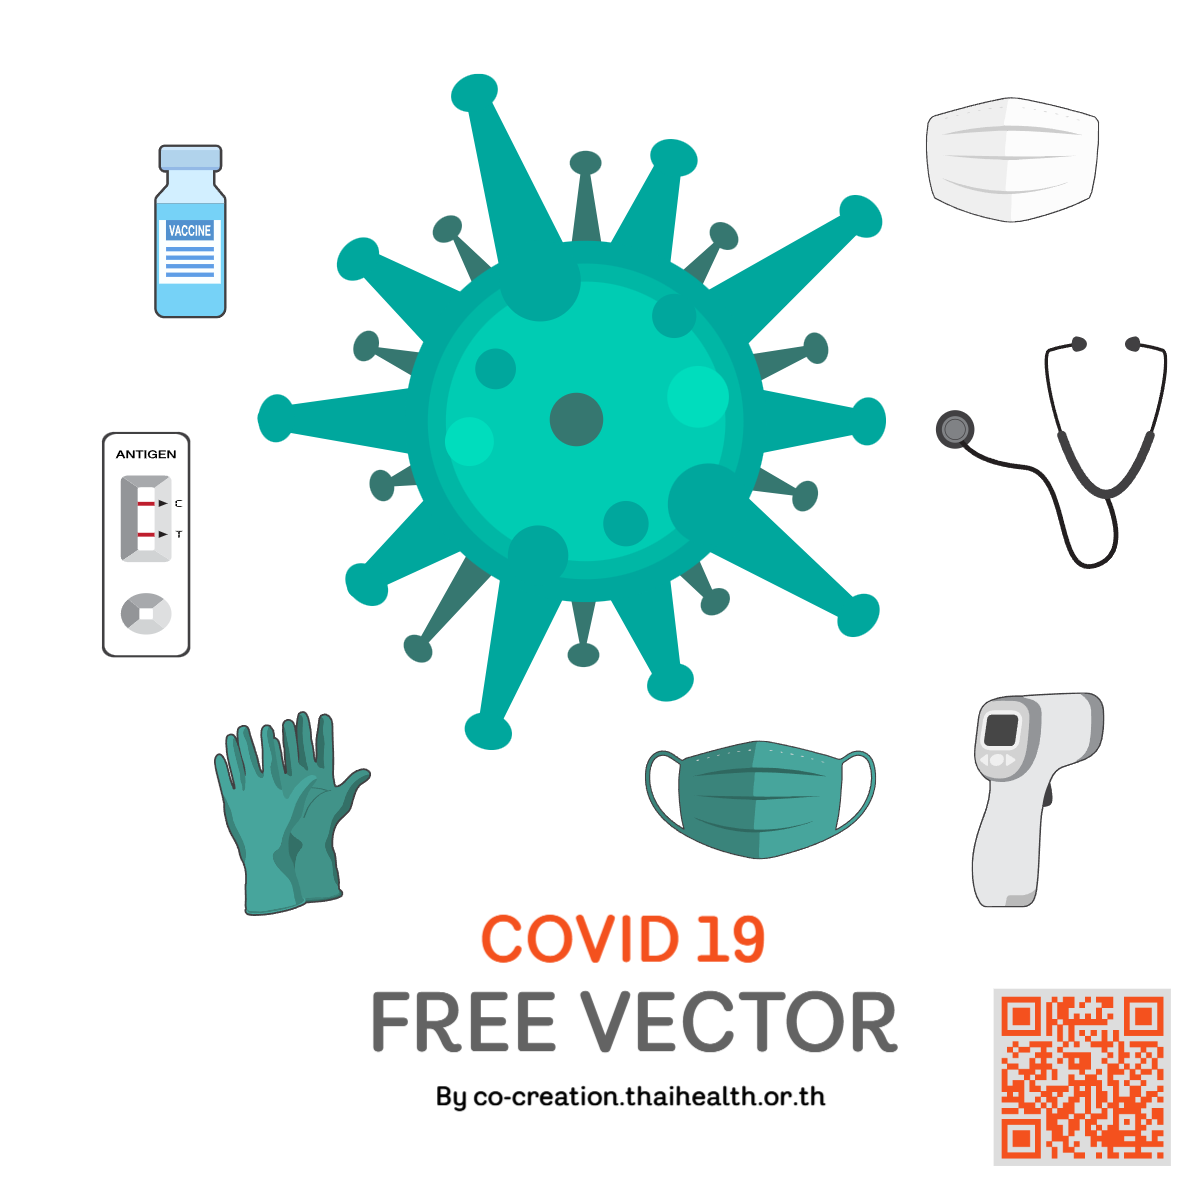 Free vector Covid-19